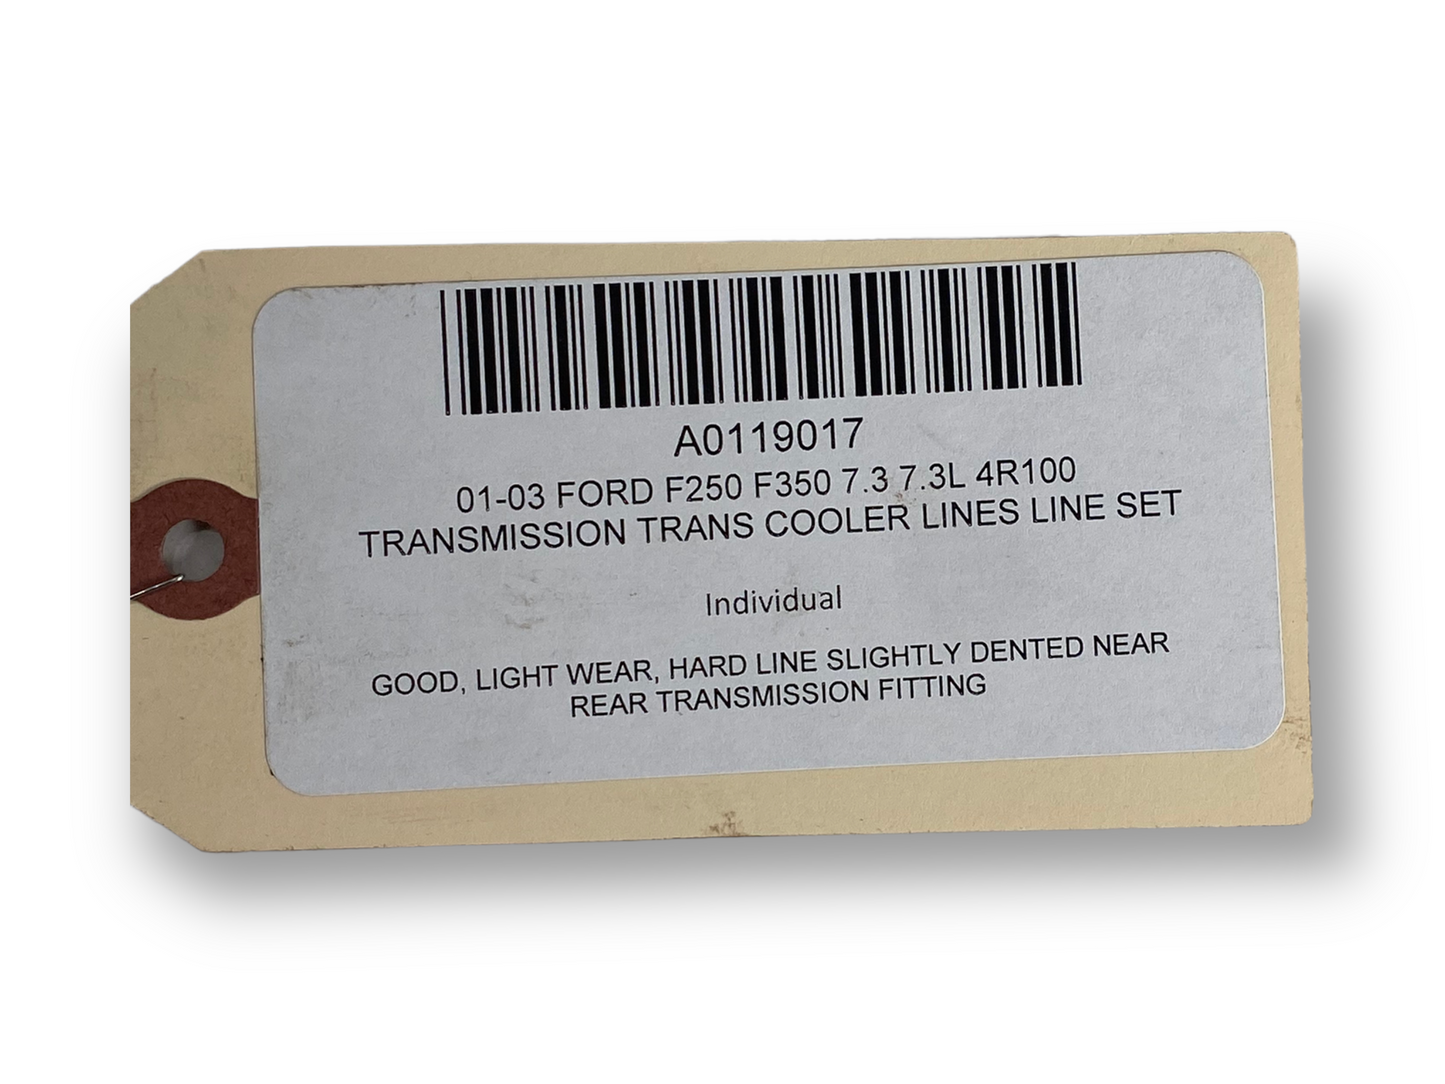 01-03 Ford F250 F350 7.3 7.3L 4R100 Transmission Trans Cooler Lines Line Set